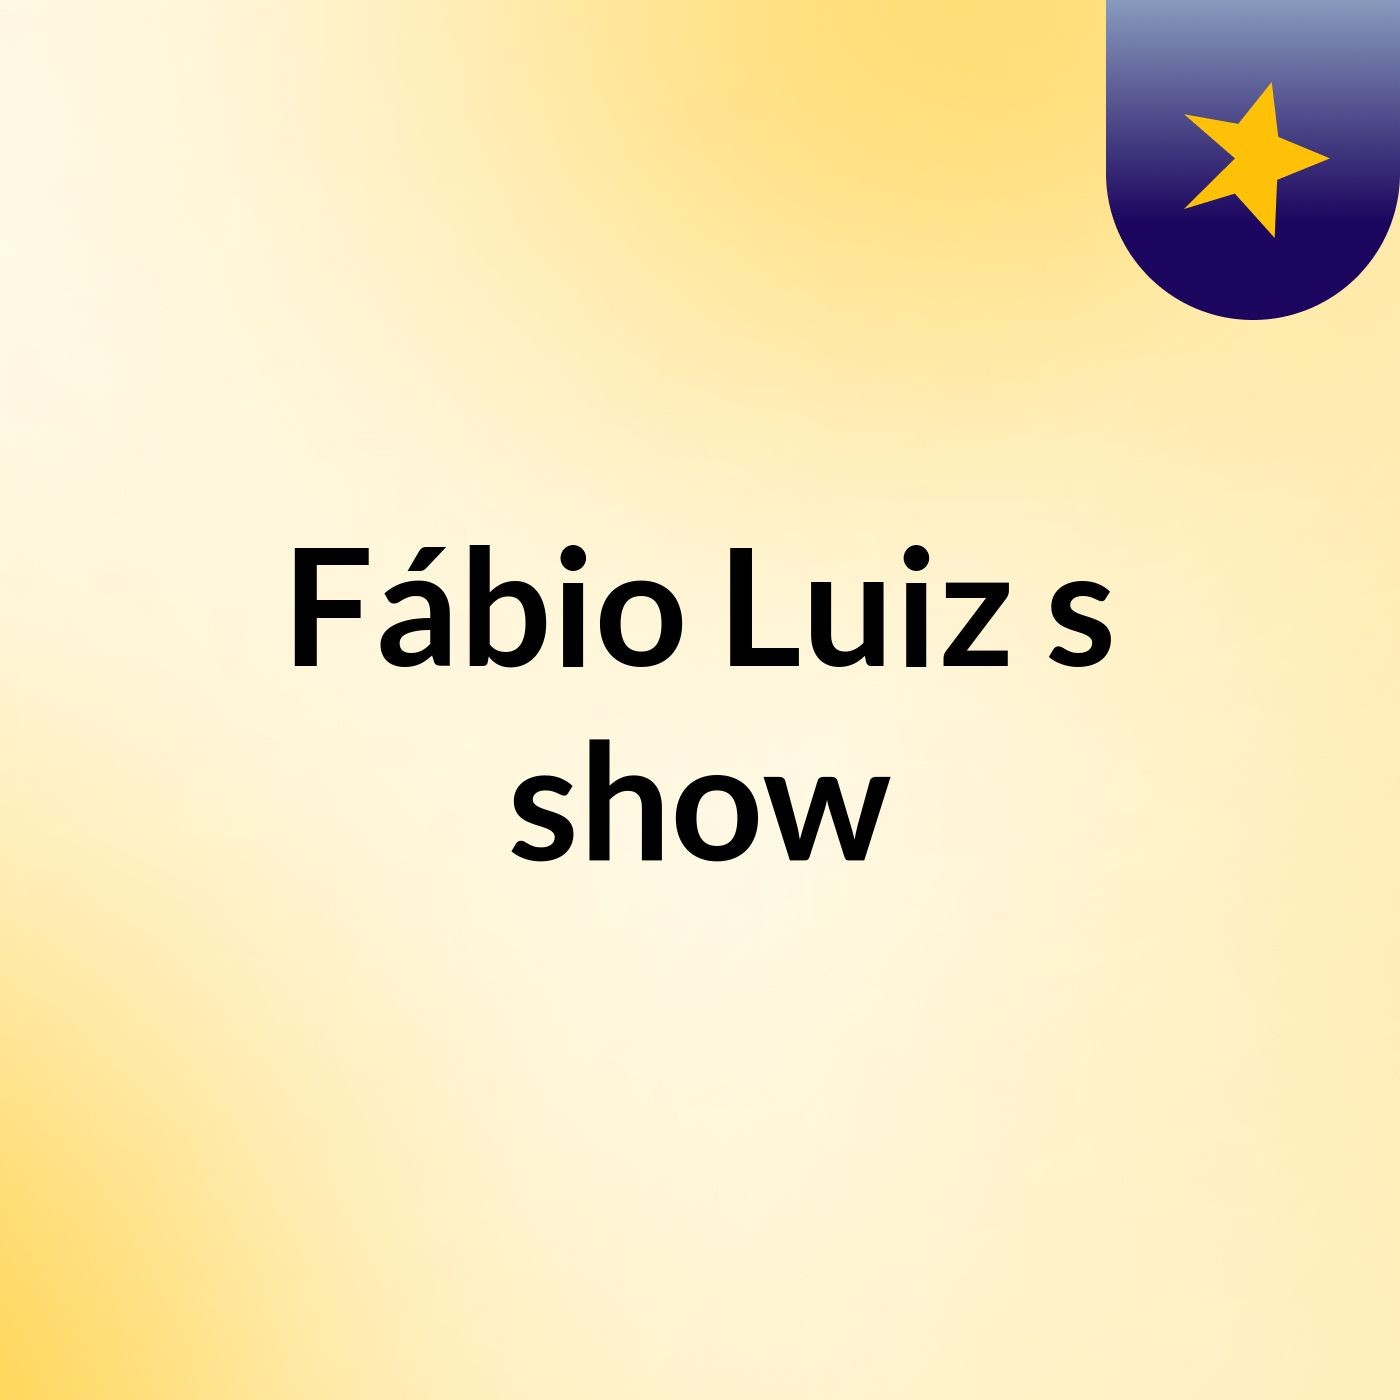 Fábio Luiz's show